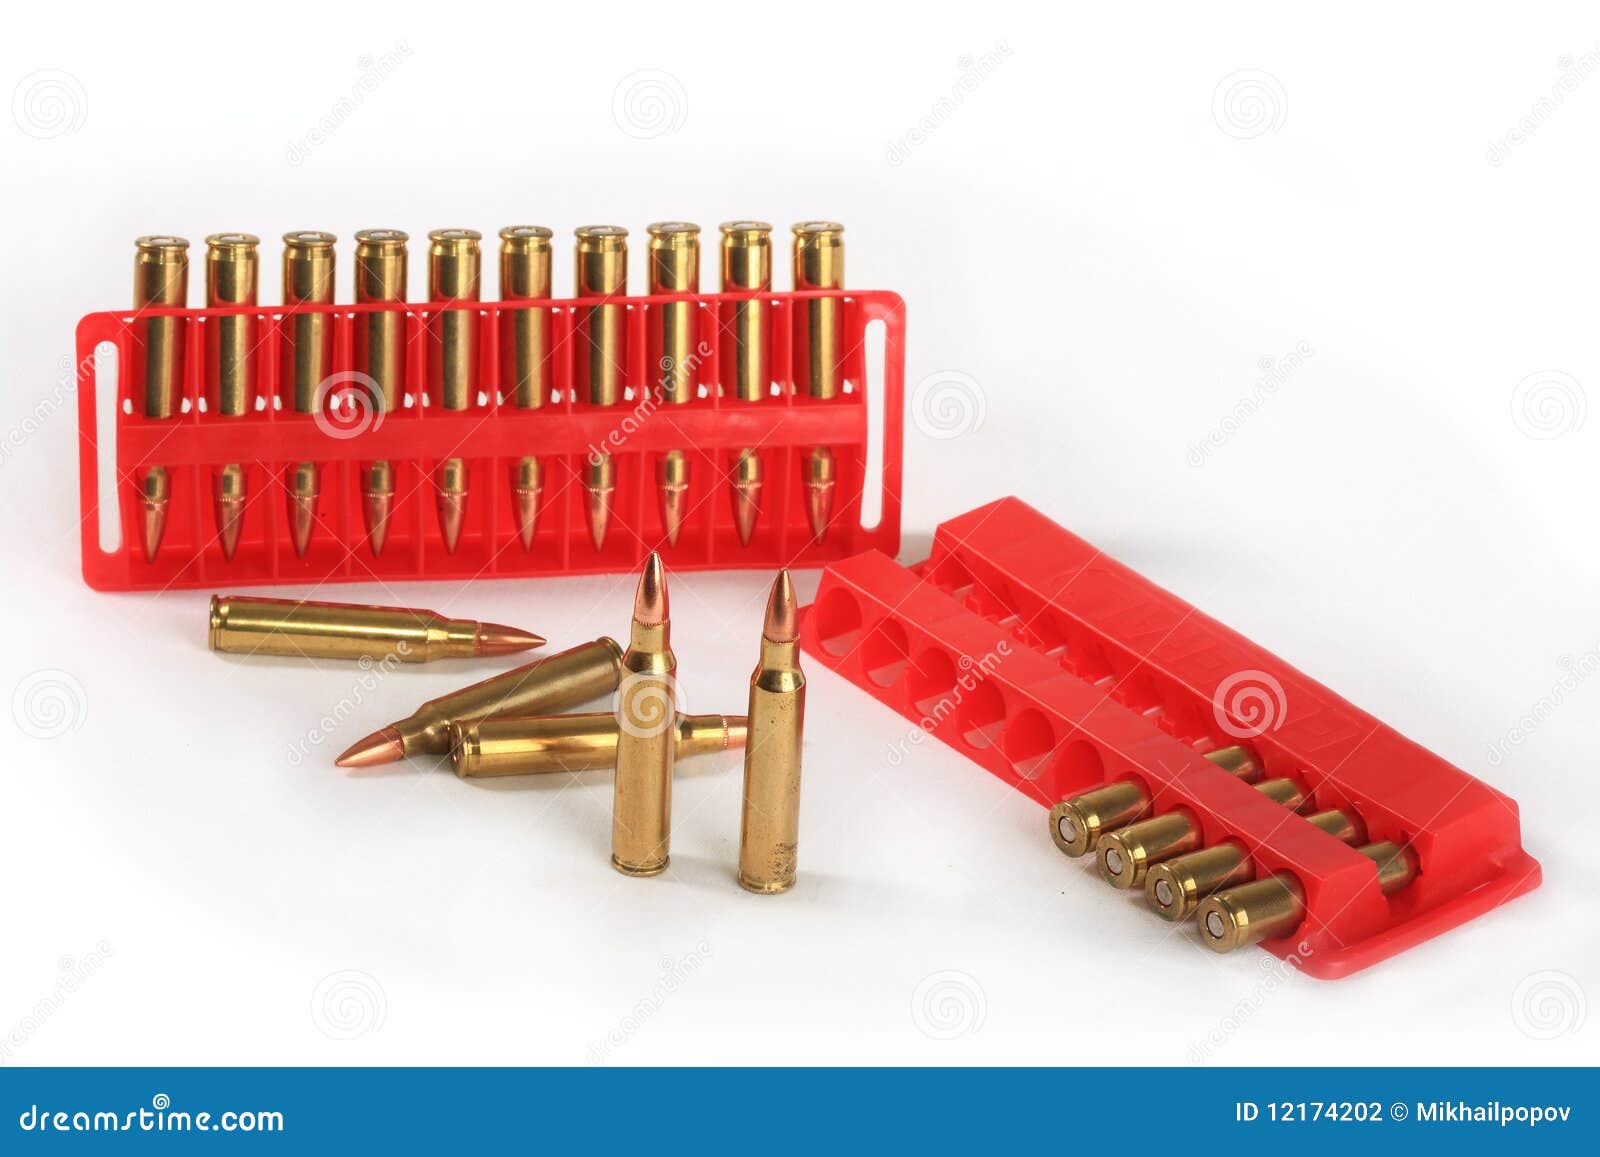 cartridges of calibre 223 rem